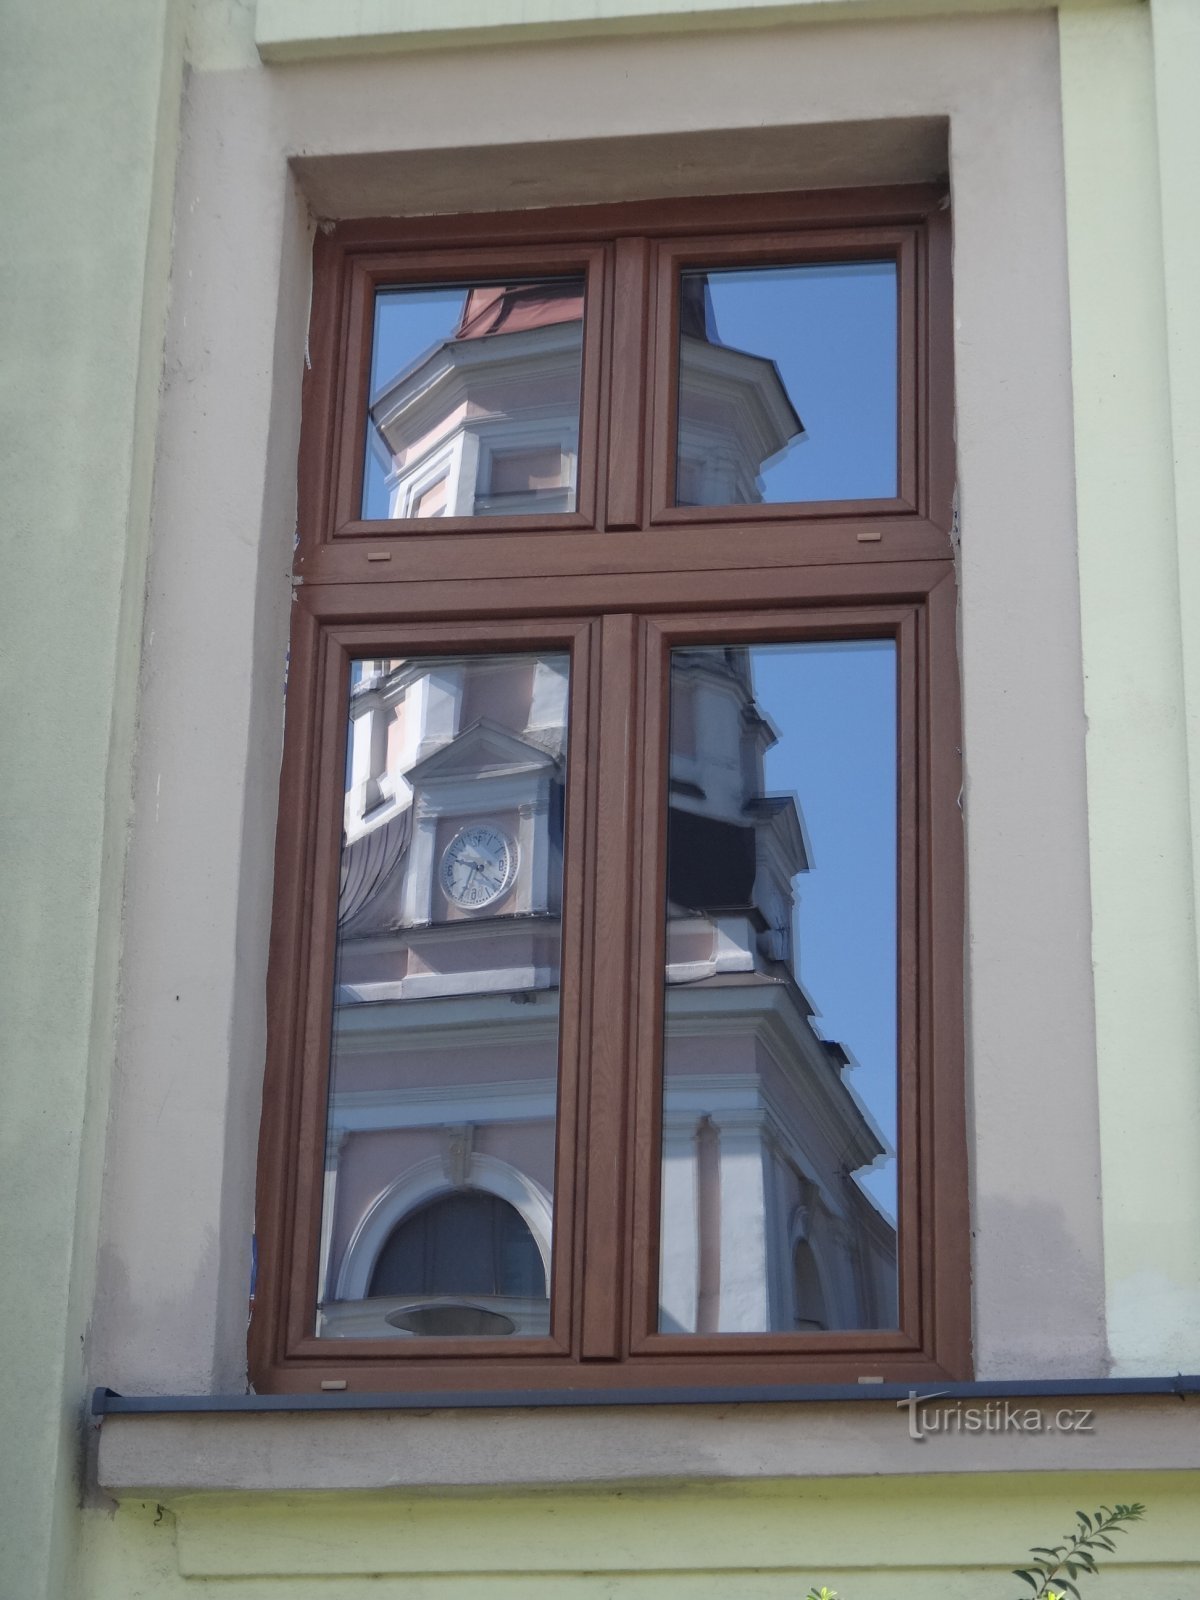 отражение церкви в окнах ратуши